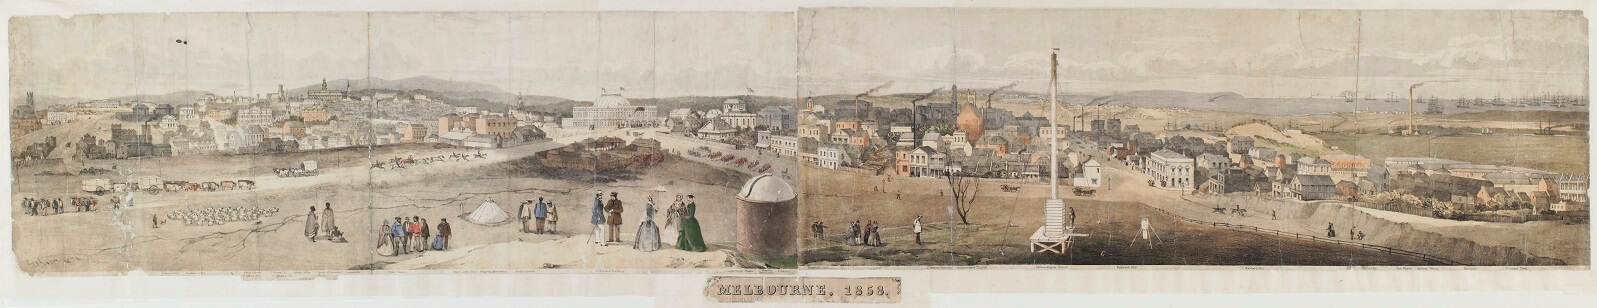 Melbourne 1858 sm